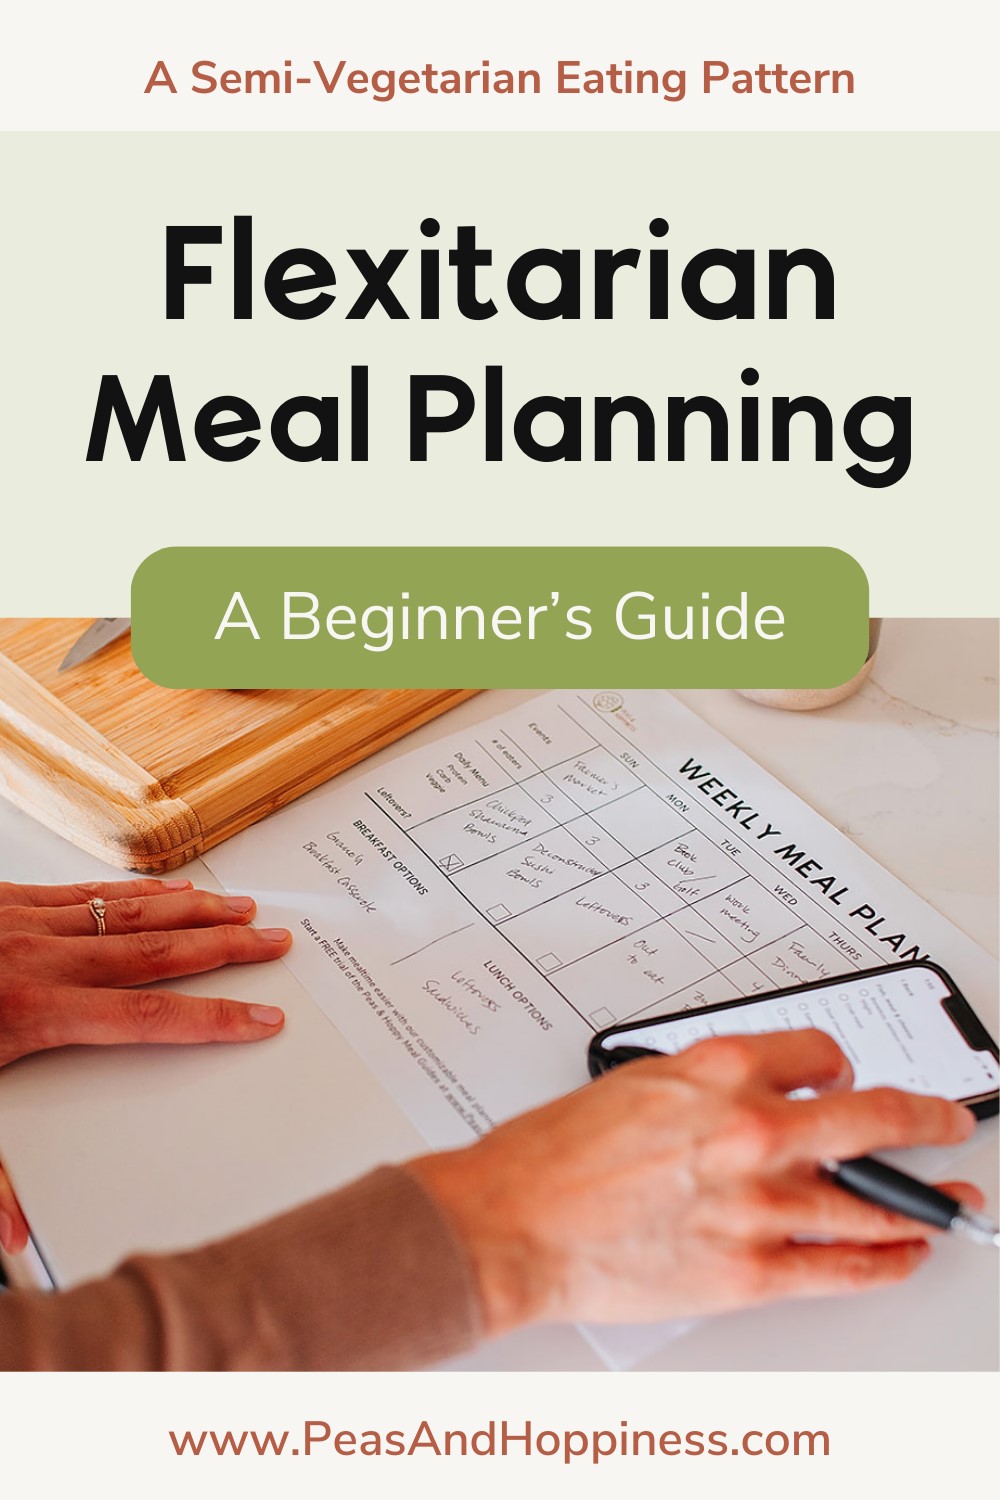 Flexitarian Meal Planning - A Beginner's Guide - Semi-Vegetarian Diet